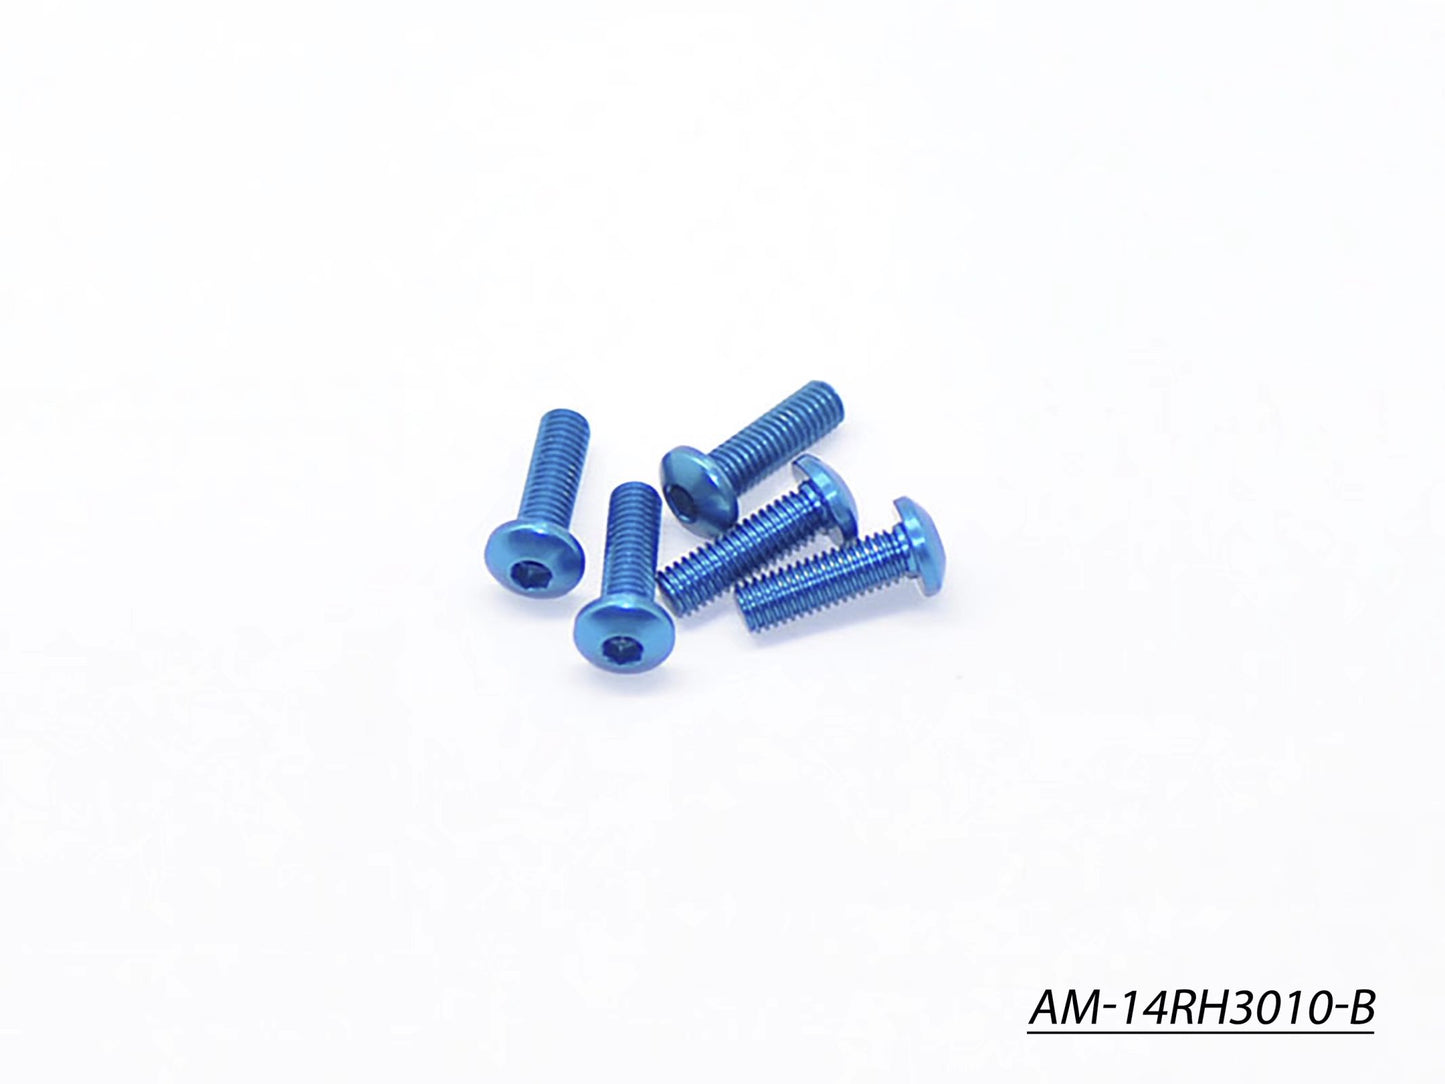 Alu Screw Allen Roundhead M3X10 Blue (7075) (5) (AM-14RH3010-B)